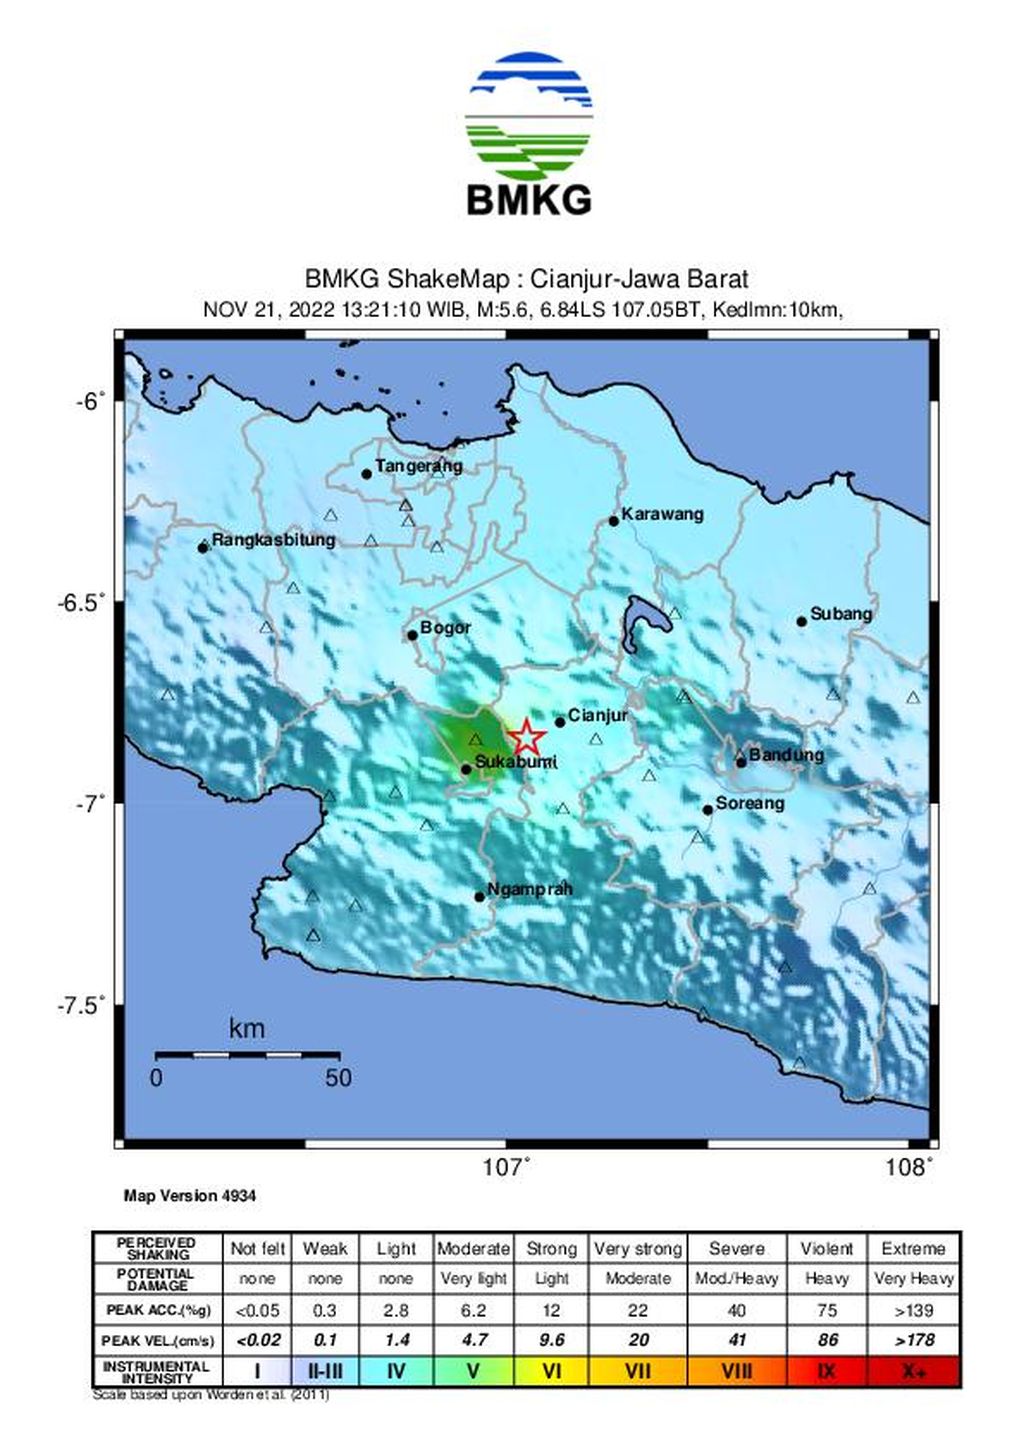 Gempa berkekuatan M 5,6 mengguncang pada Senin (21/11/2022) pukul 13.21 WIB berpusat di darat sekitar 10 kilometer arah barat daya Cianjur, Jawa Barat.